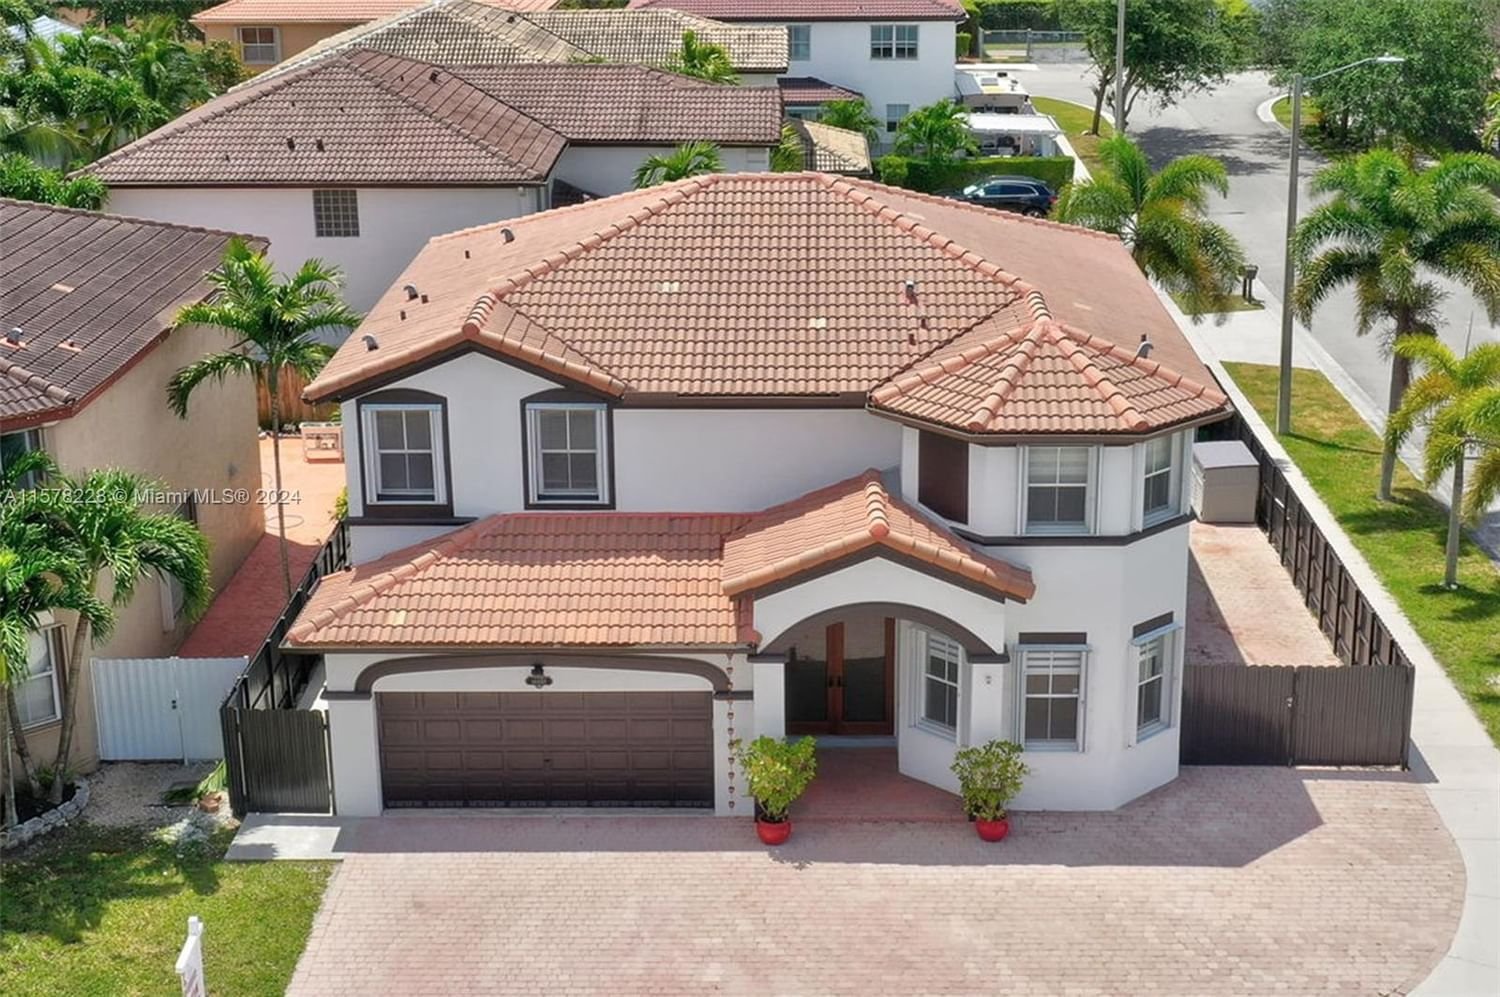 Real estate property located at 14452 10th St, Miami-Dade County, ALCO ESTATES FOURTH ADDN, Miami, FL